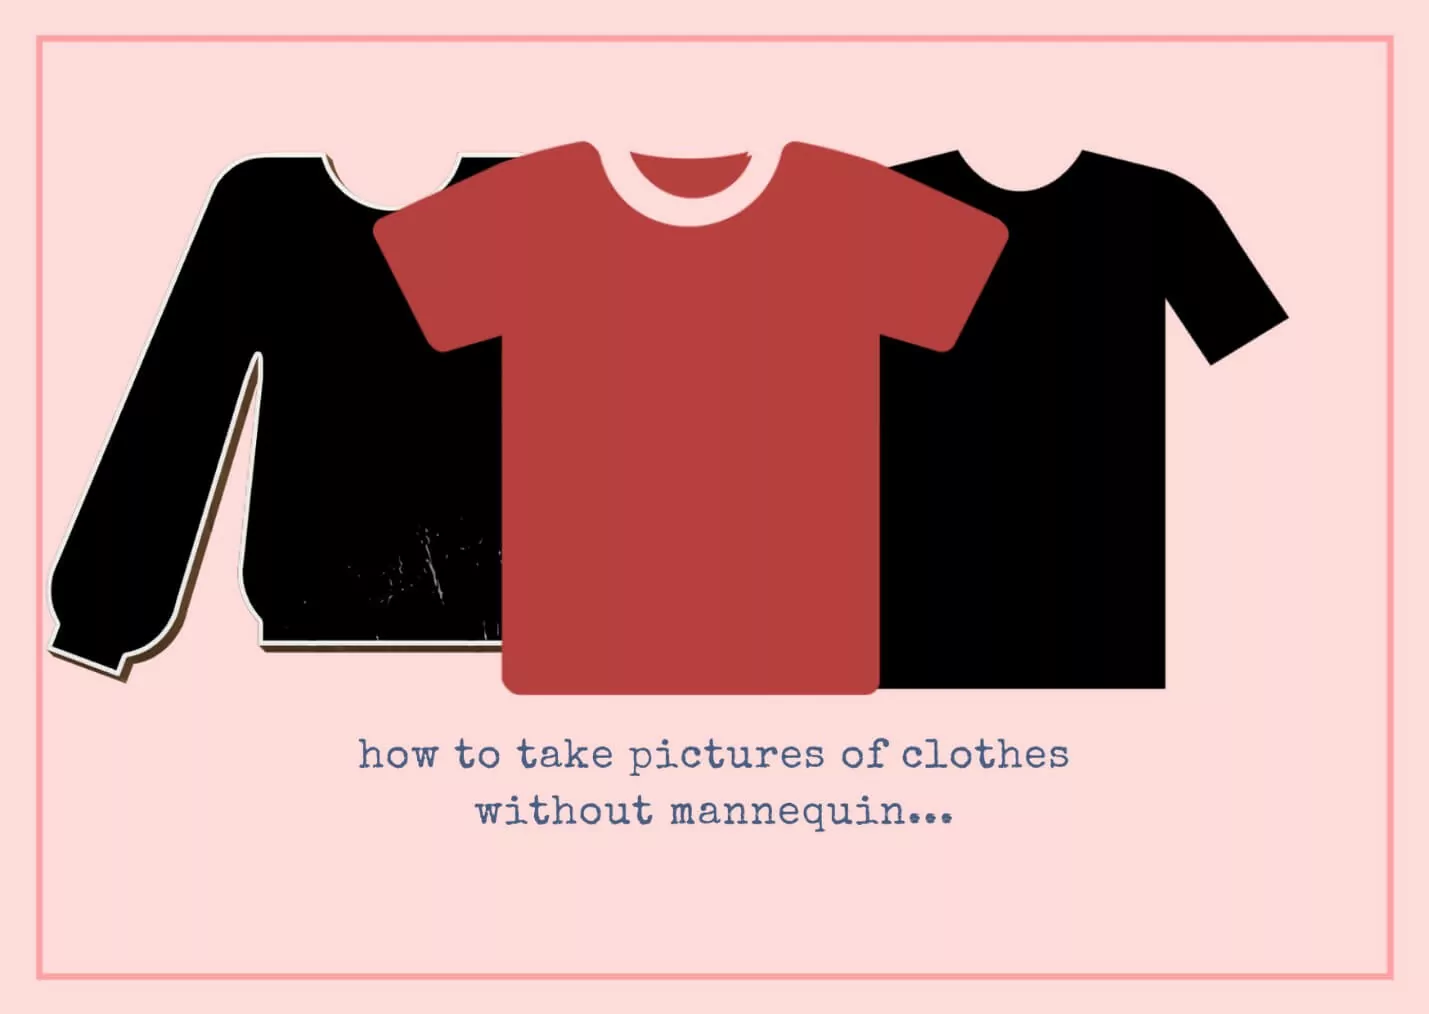 Como tirar fotos de roupas sem manequim? Imagem em destaque